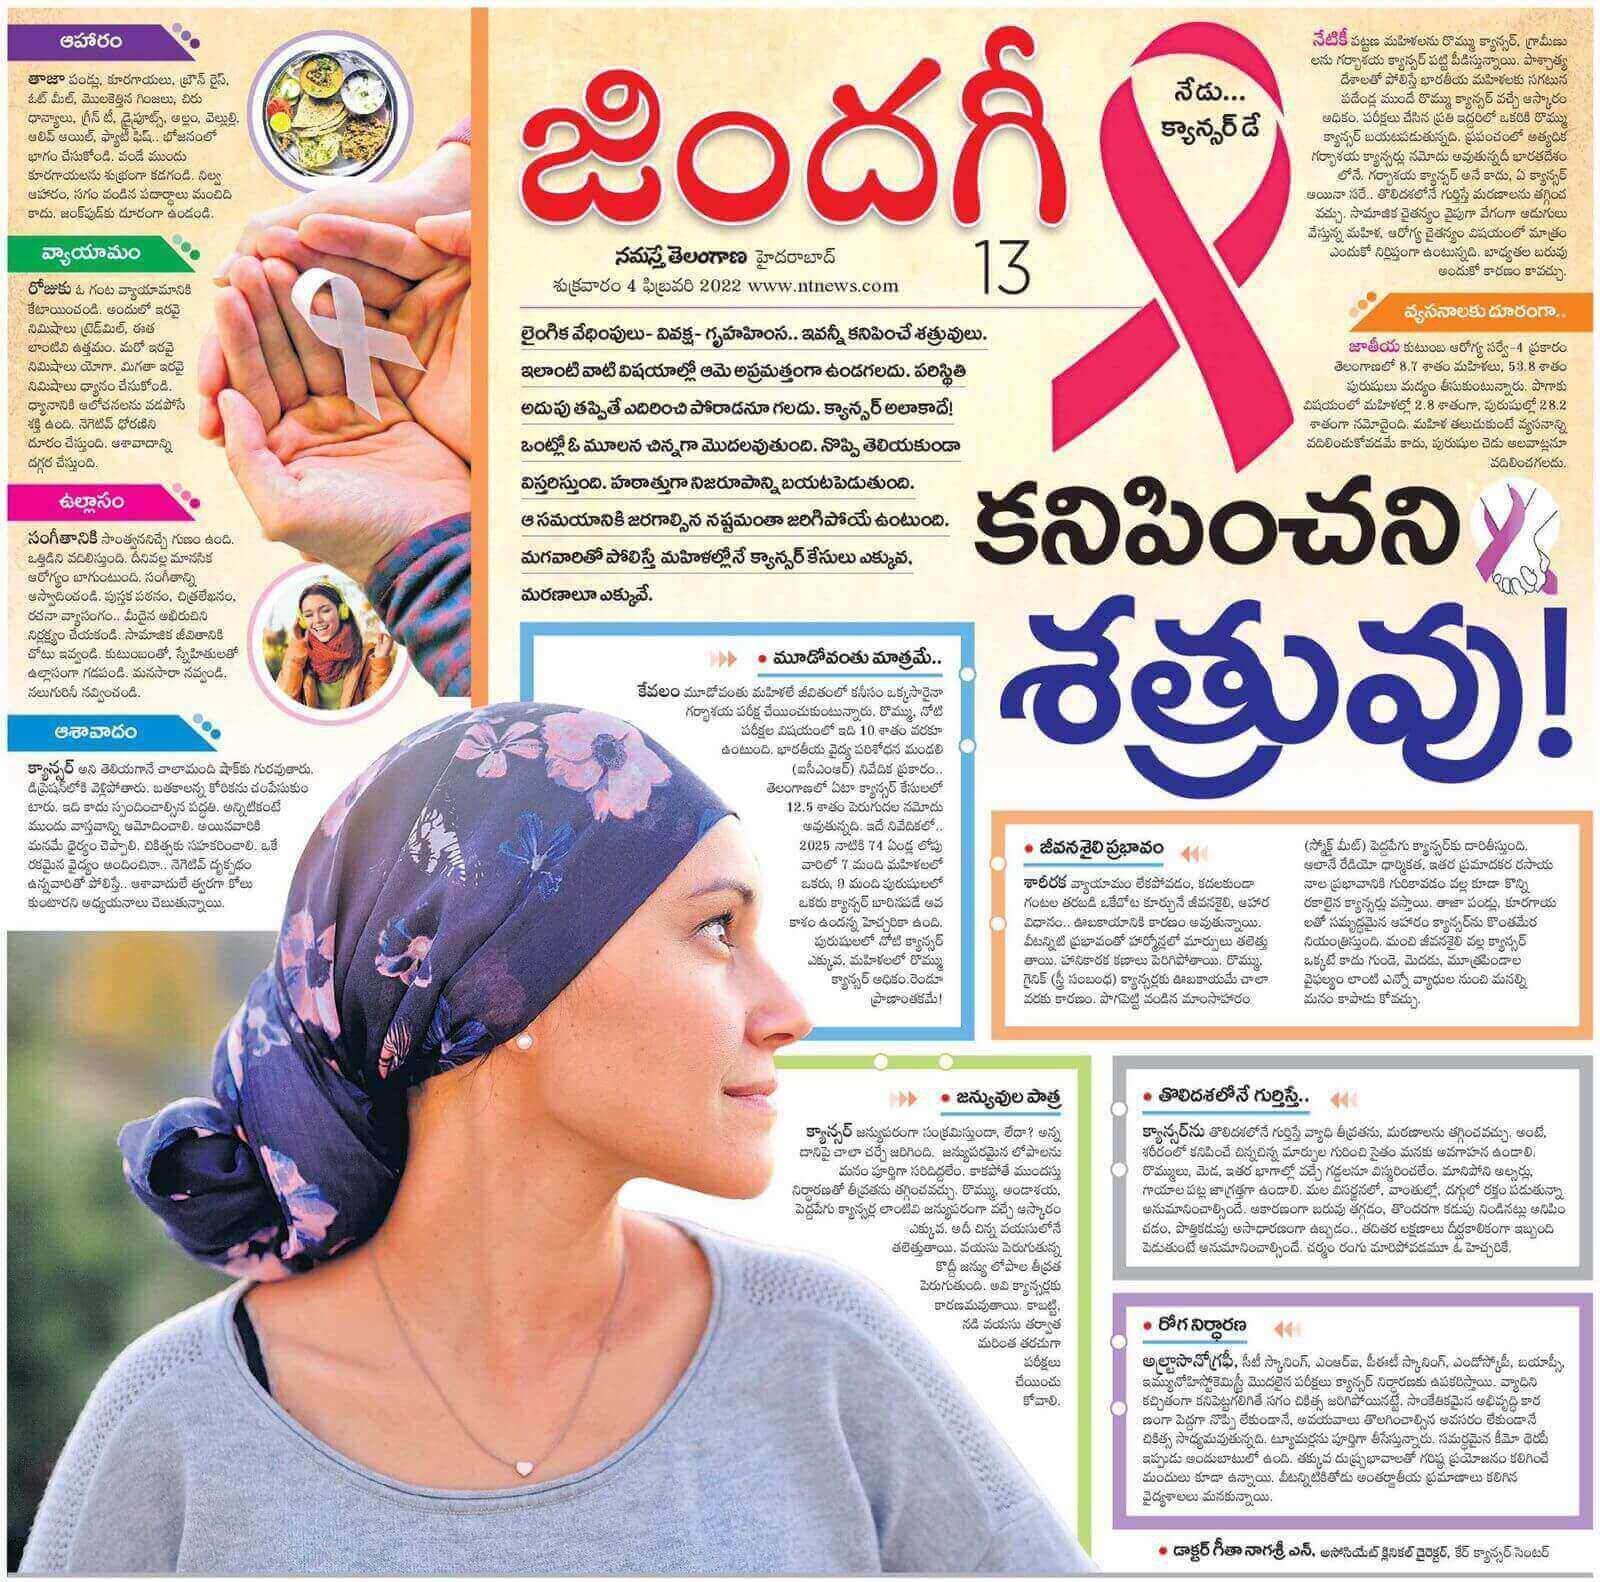 डॉ. गीता नागश्री एन - सल्लागार सर्जिकल ऑन्कोलॉजिस्ट यांचा जागतिक कर्करोग दिनावरील लेख